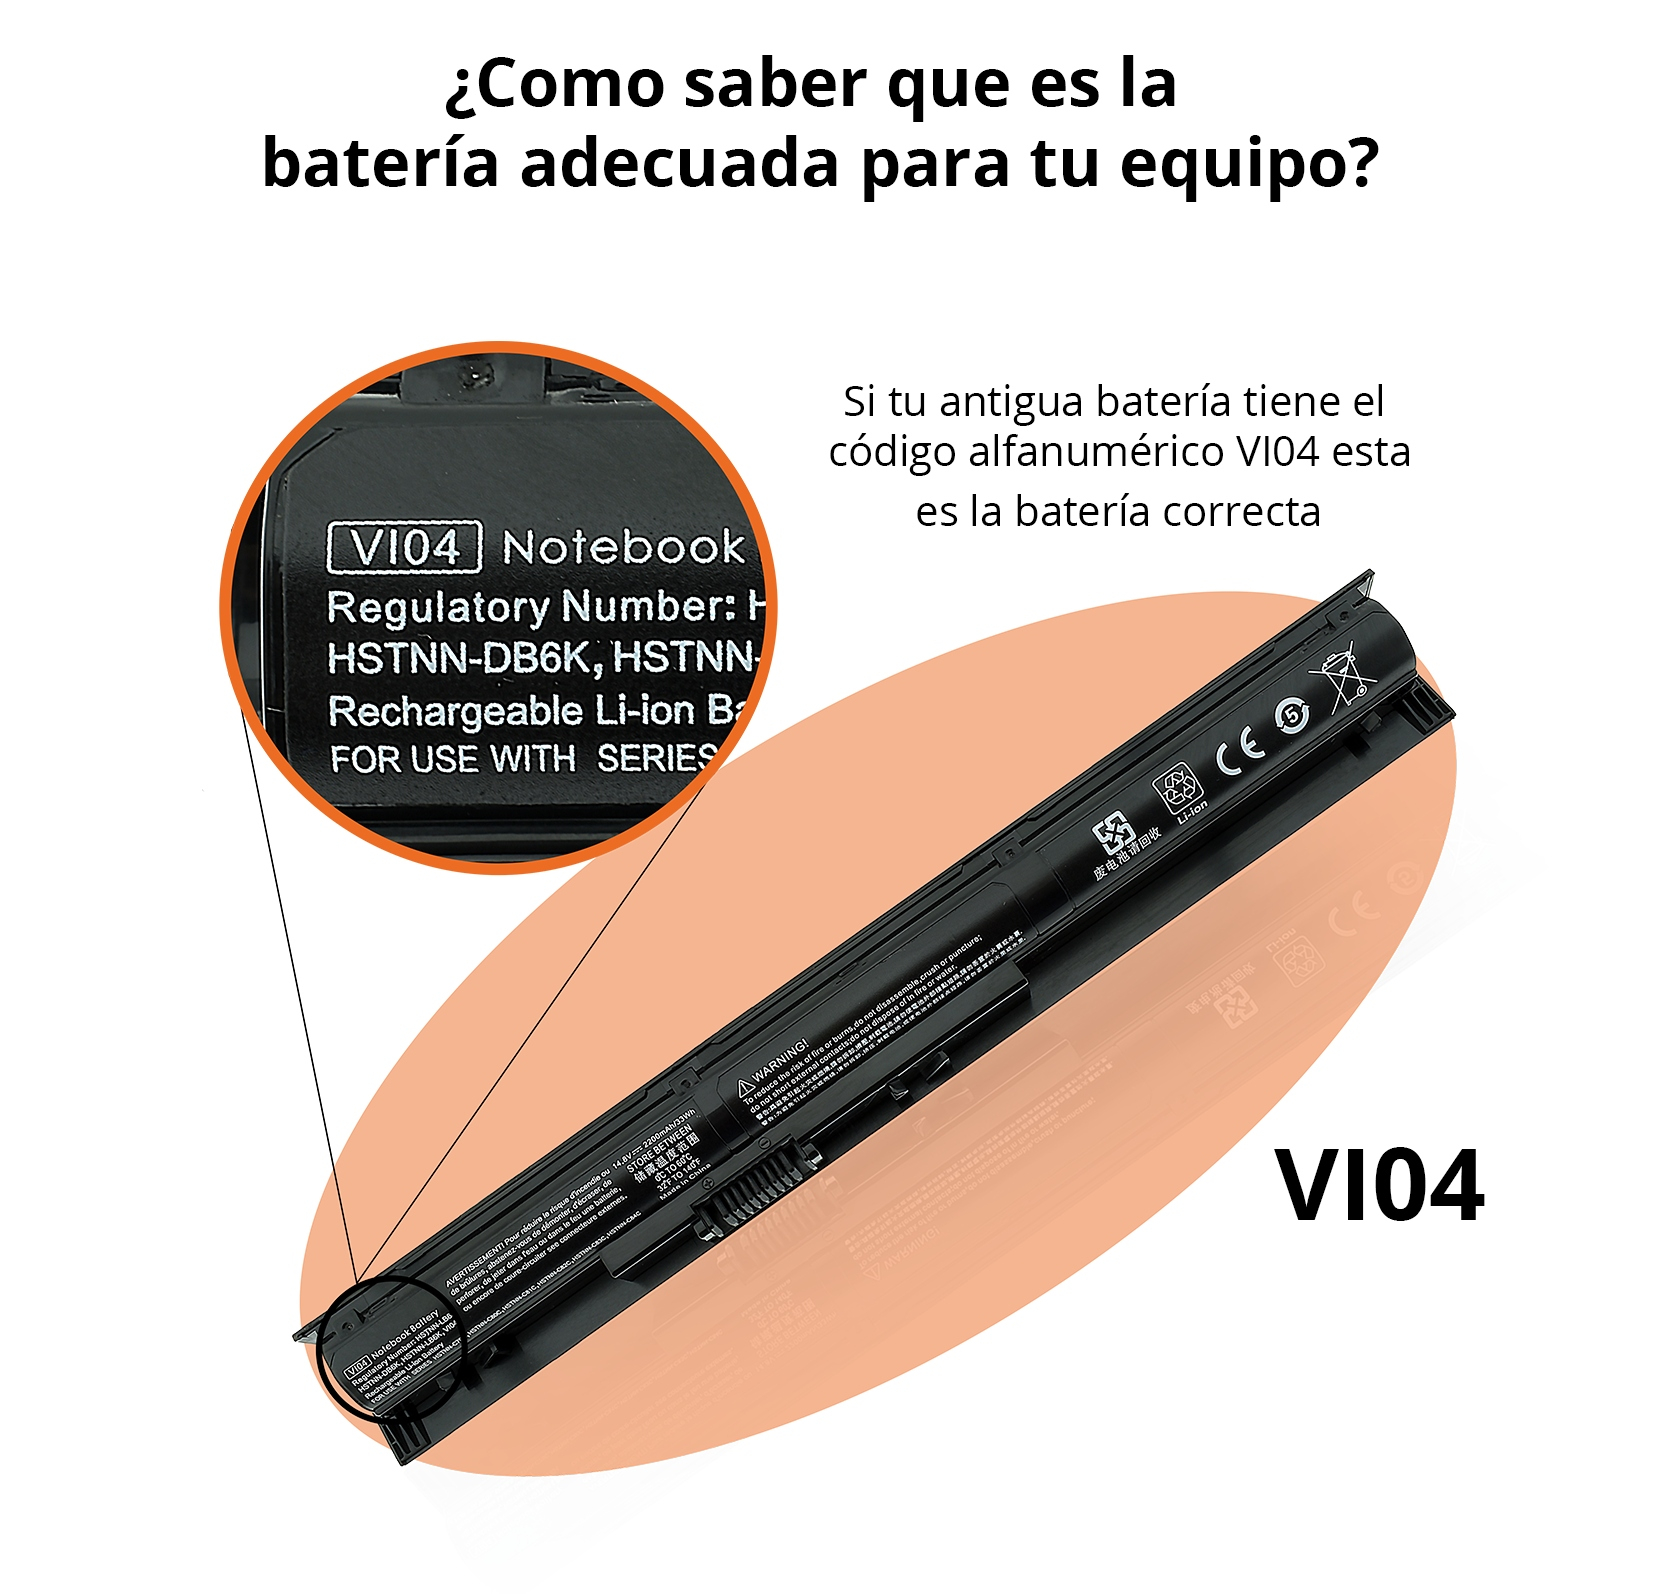 Bateria HP vi04 notebook 756478-421